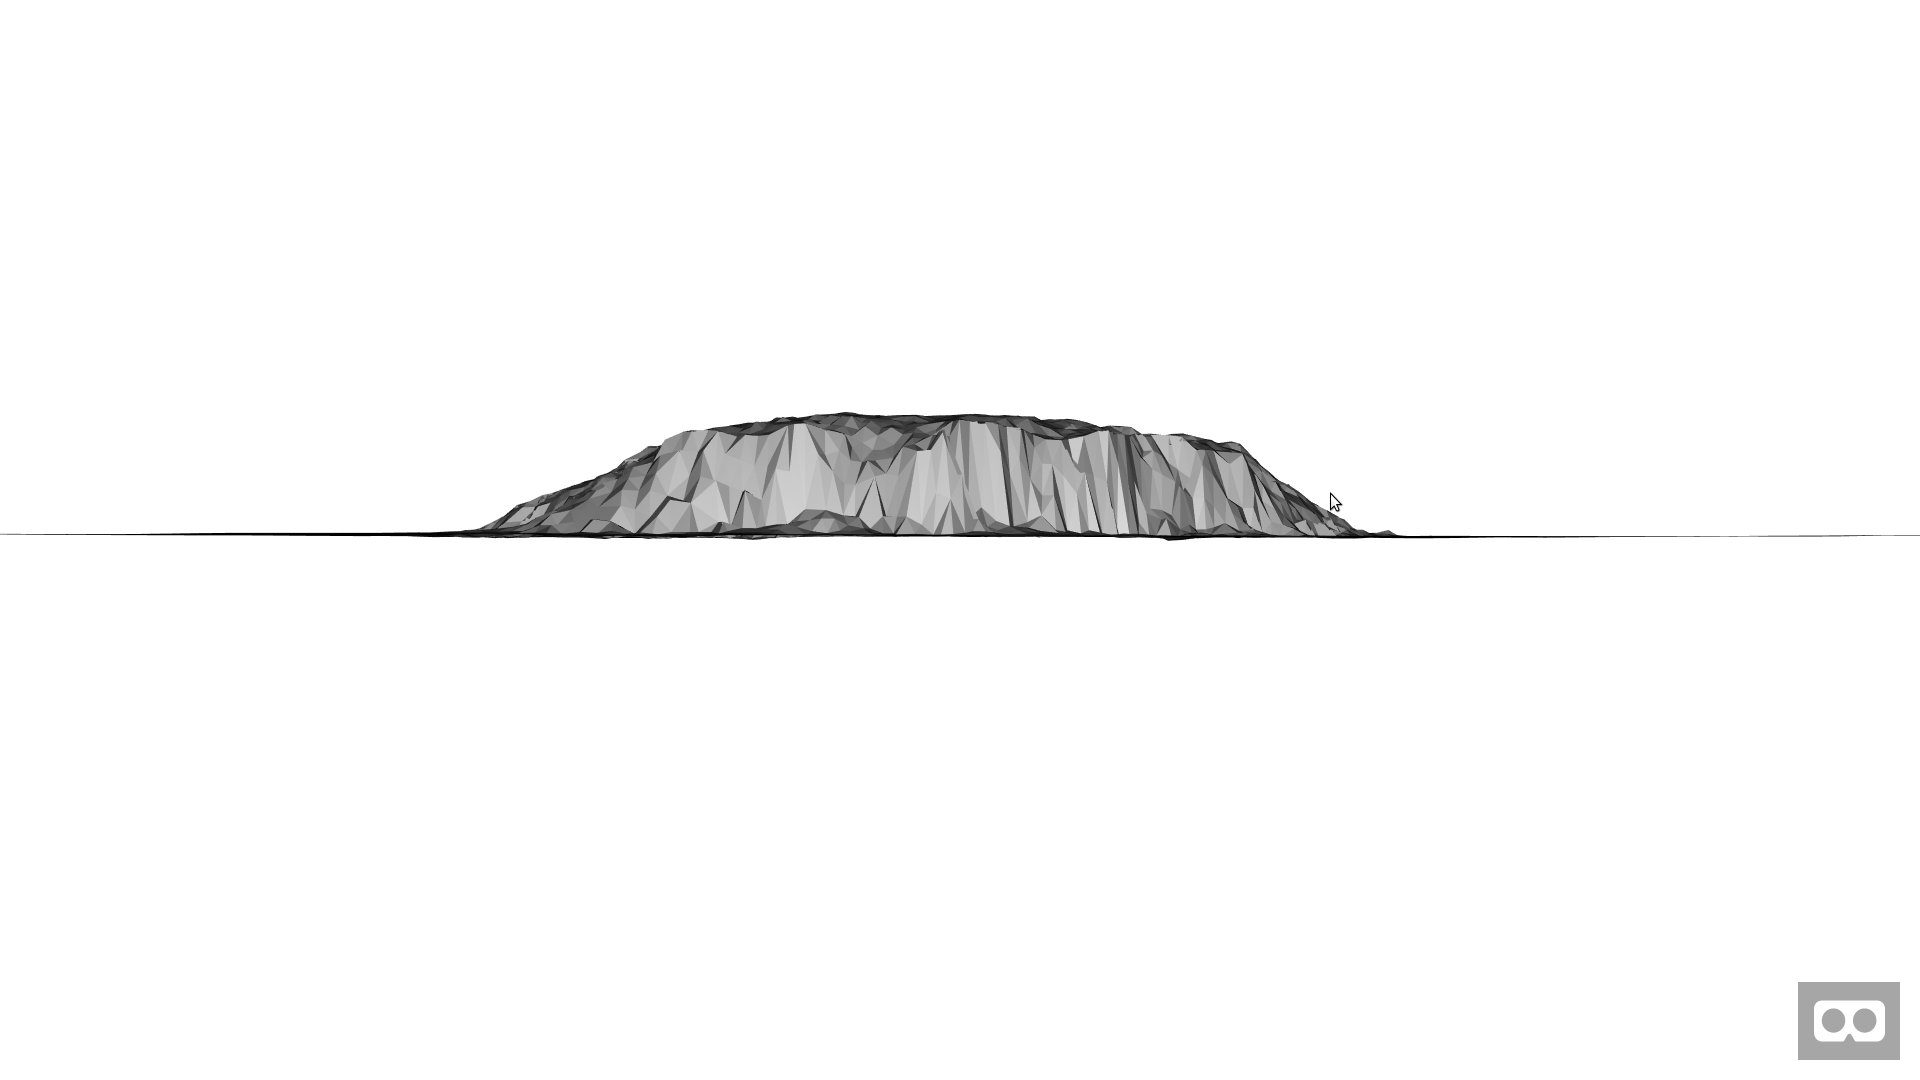 Uluru in Architectural Grey